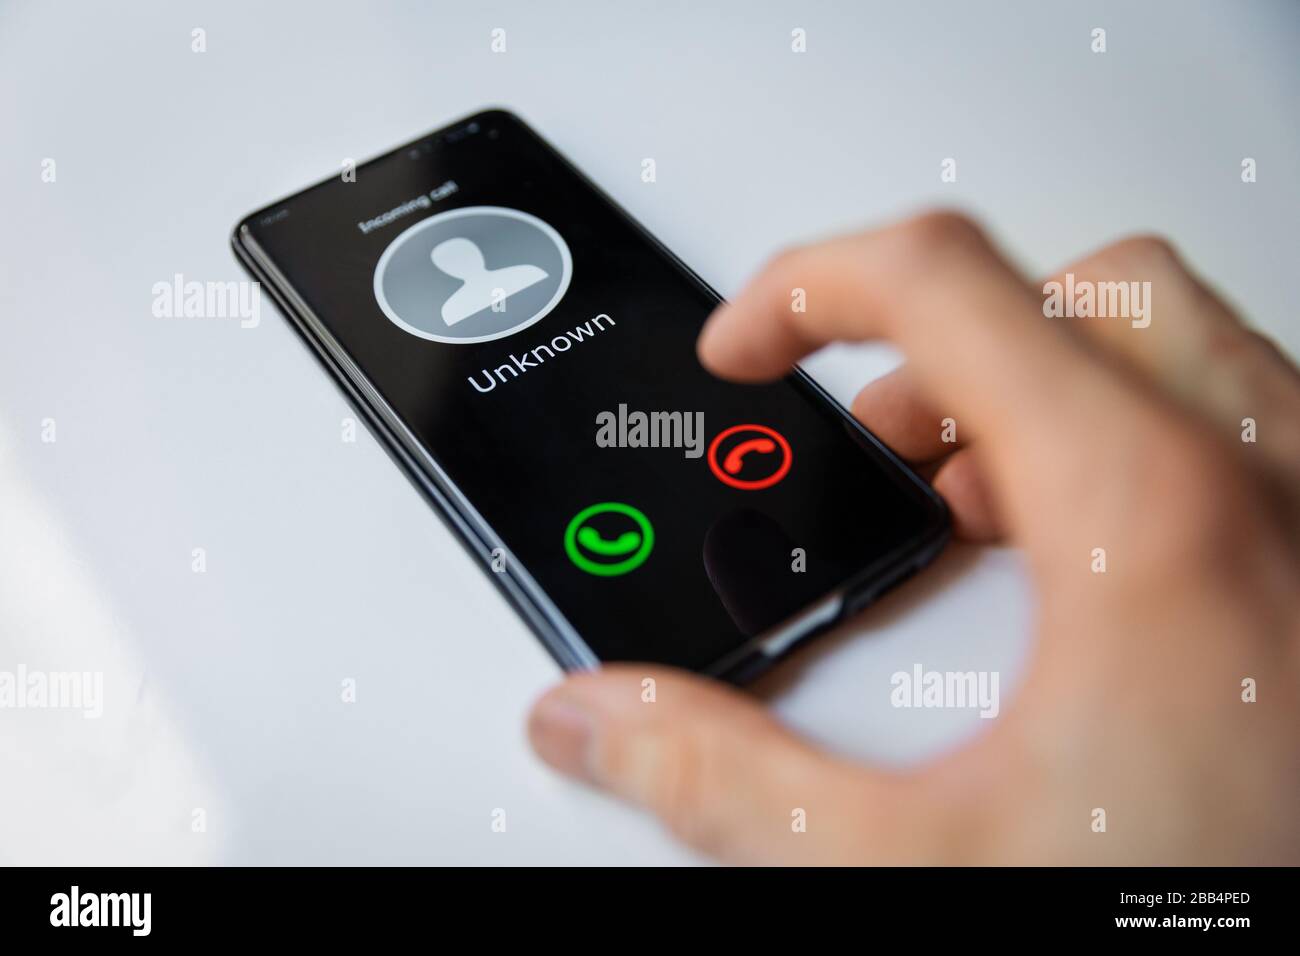 smartphone con llamada entrante de una persona desconocida Foto de stock